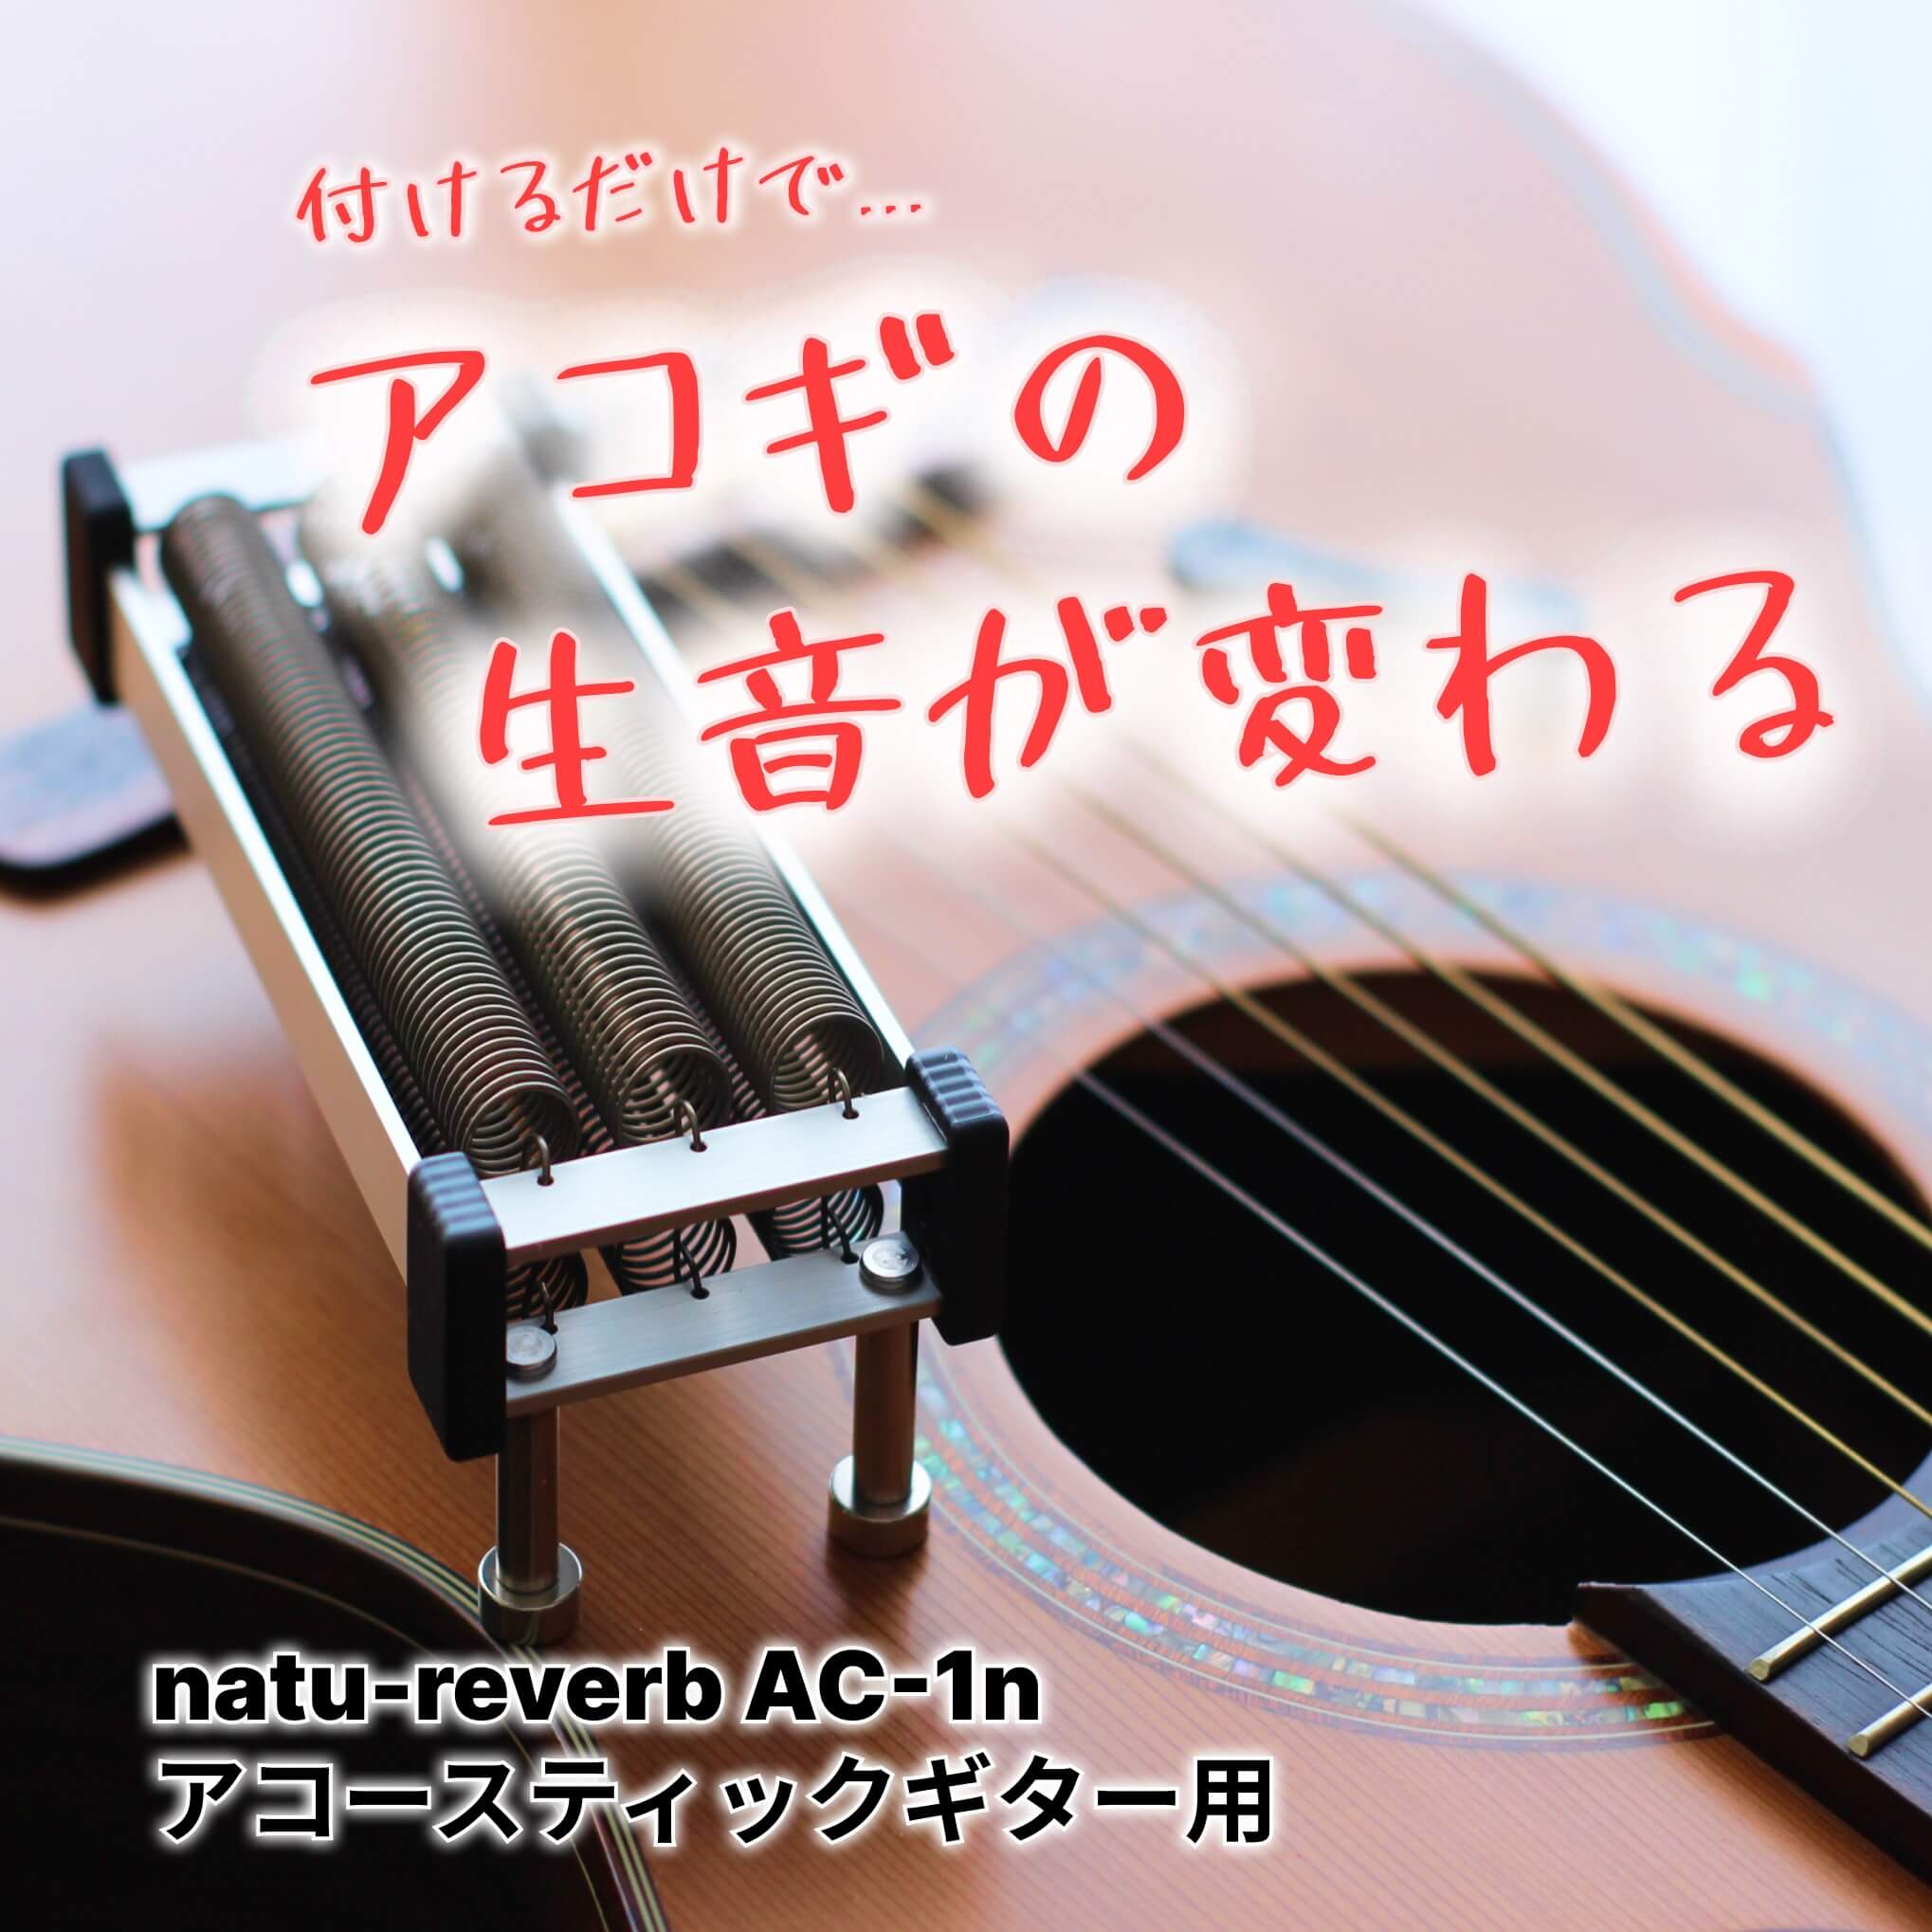 アコースティックギター用 natu-reverb AC-1n